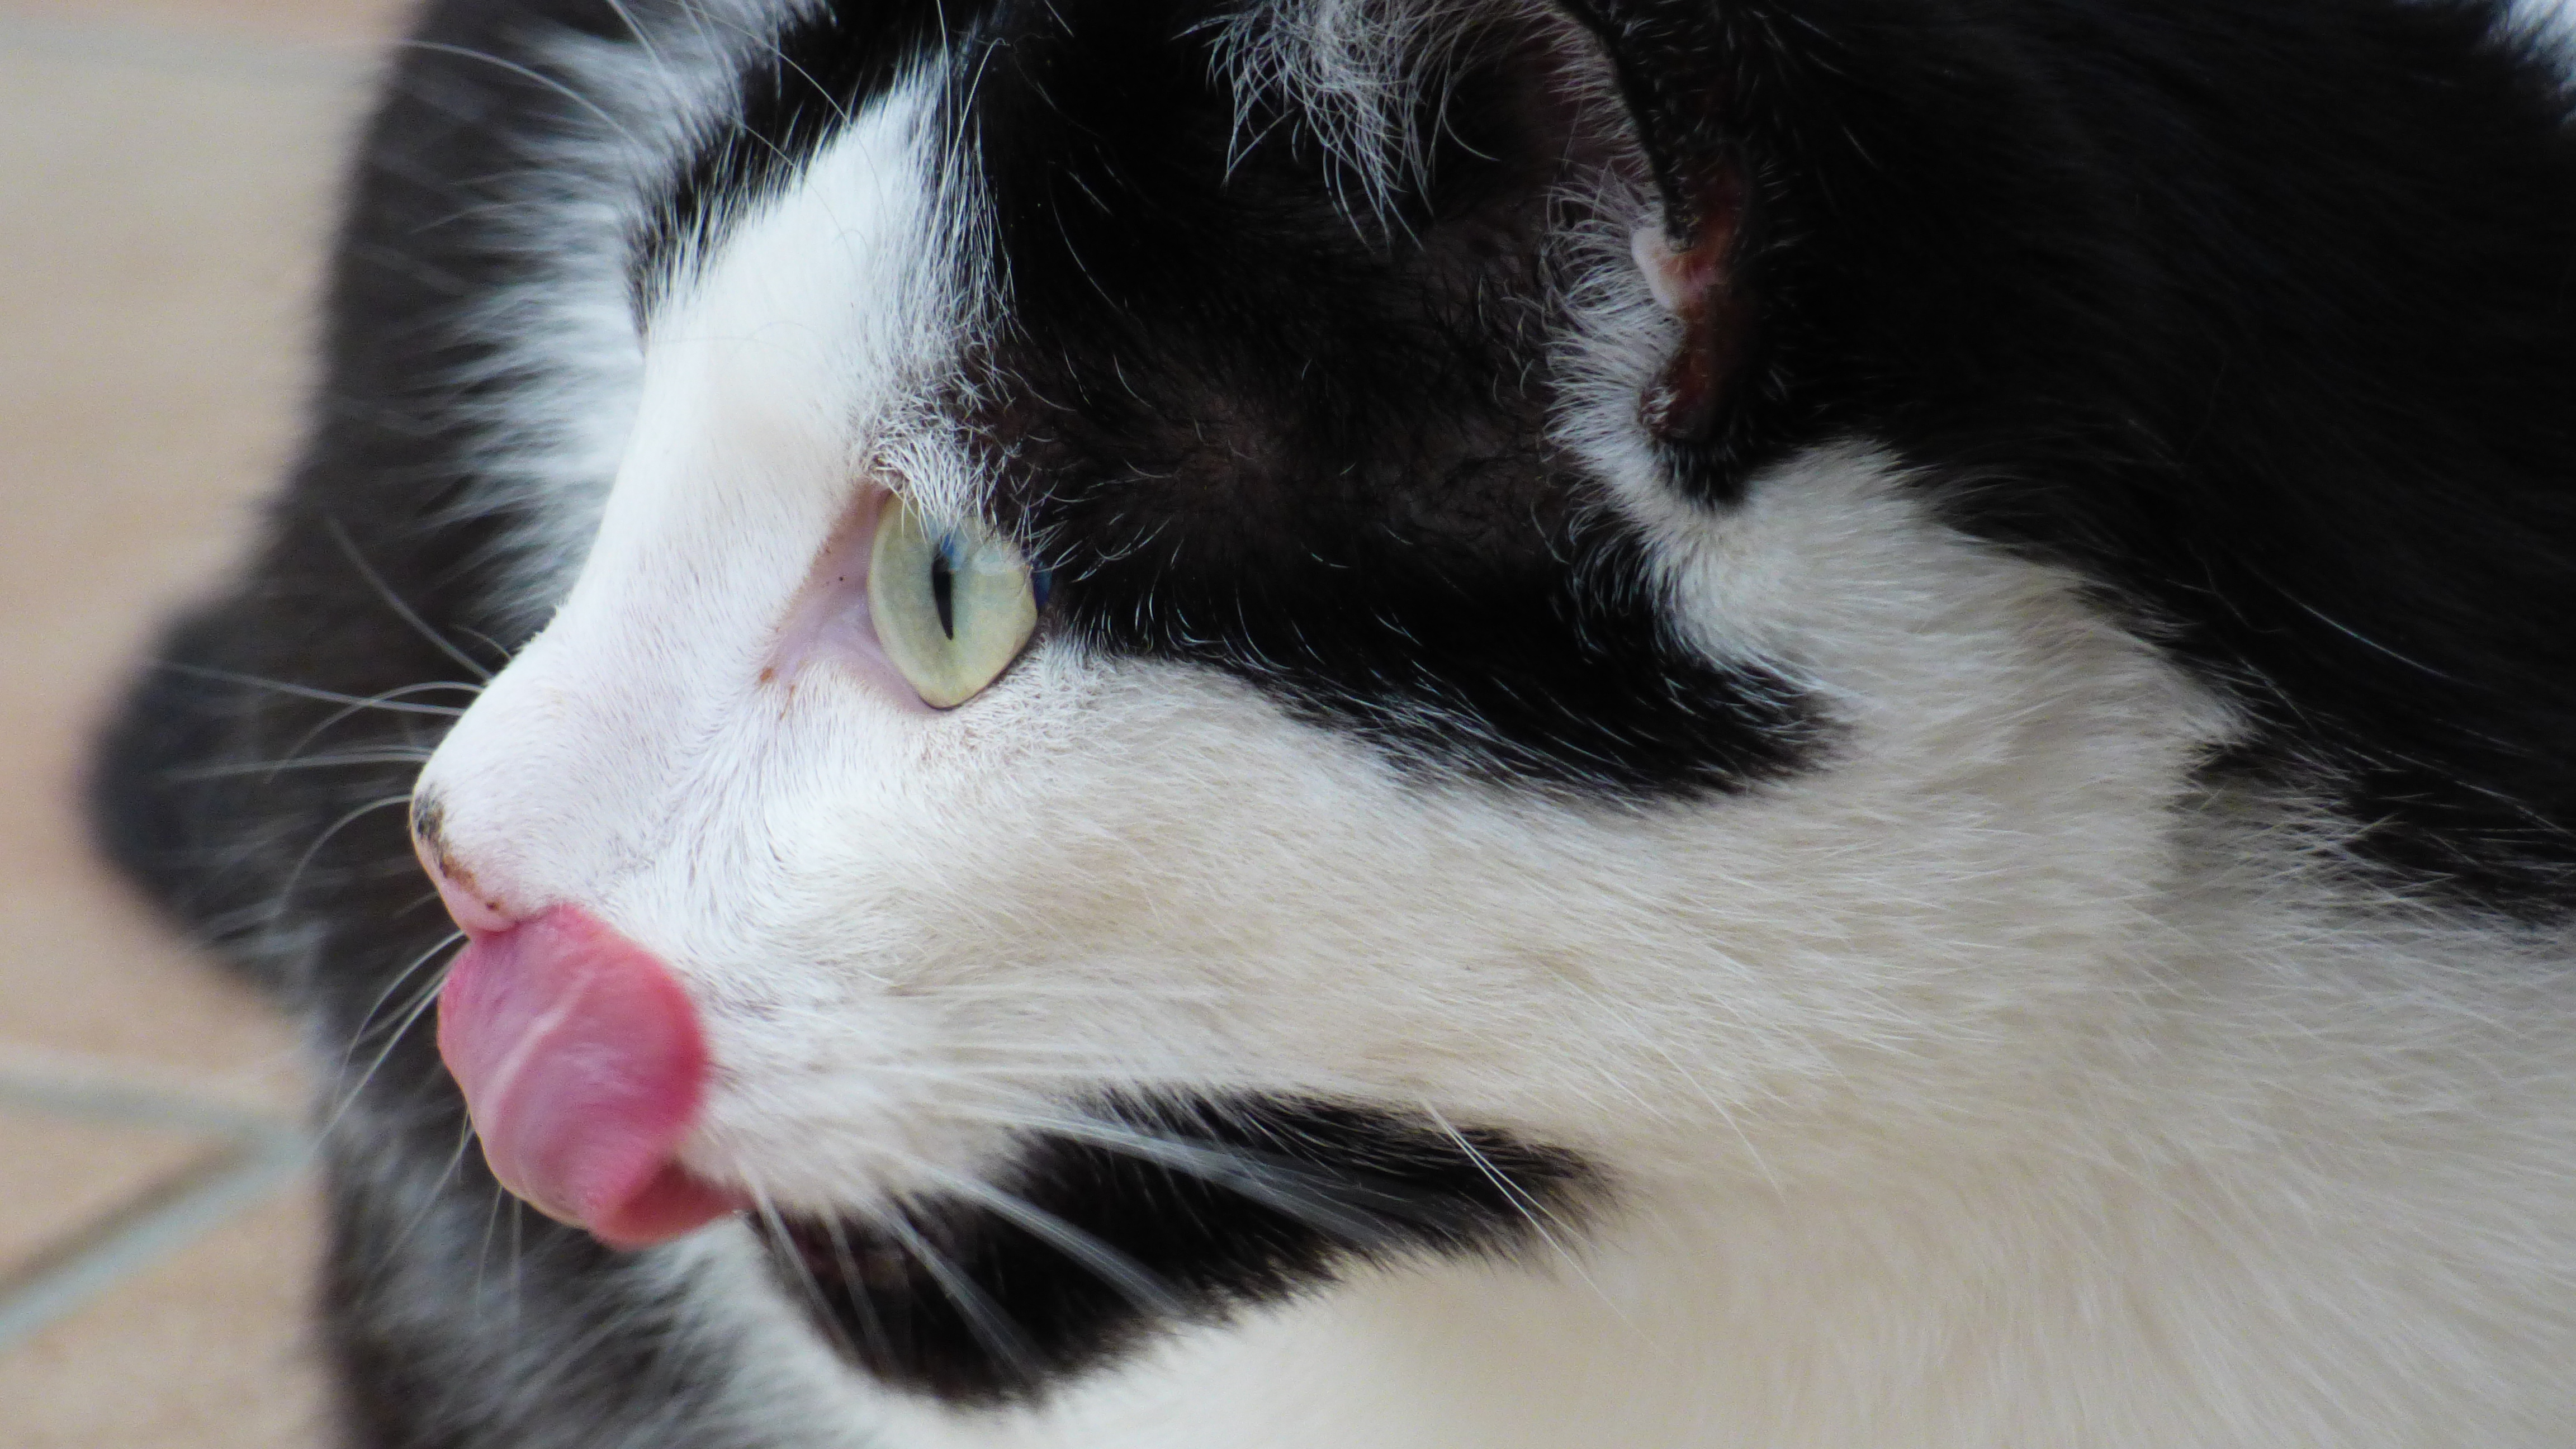 File:Katzen, die die Zunge rausstreckt.jpg - Wikimedia Commons